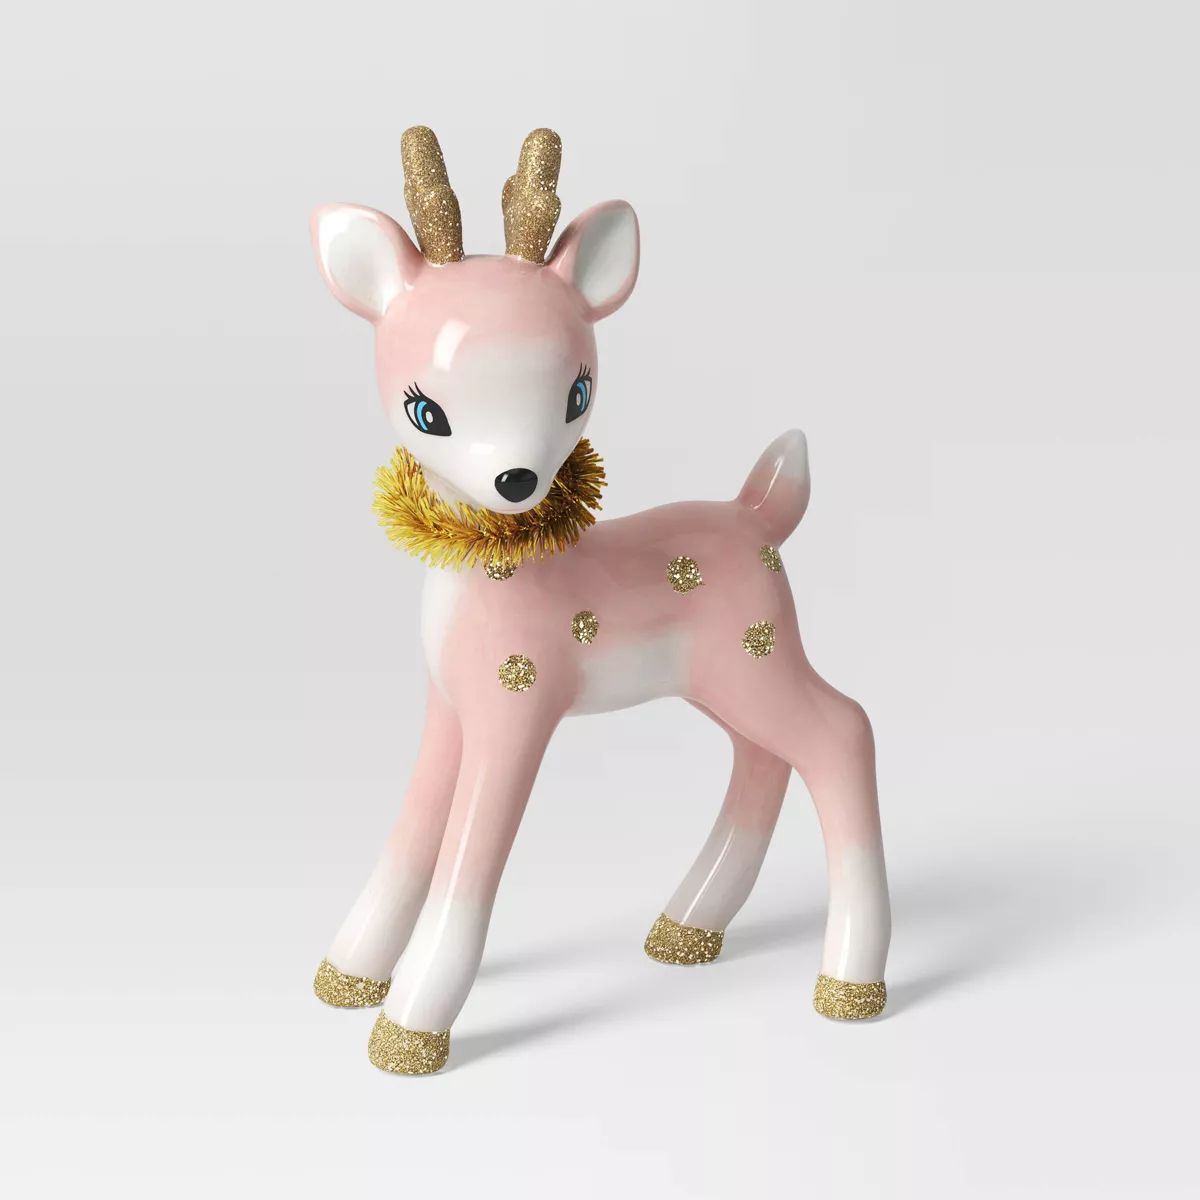 7.75" Retro Ceramic Standing Reindeer Animal Christmas Figurine - Wondershop™ Pink | Target